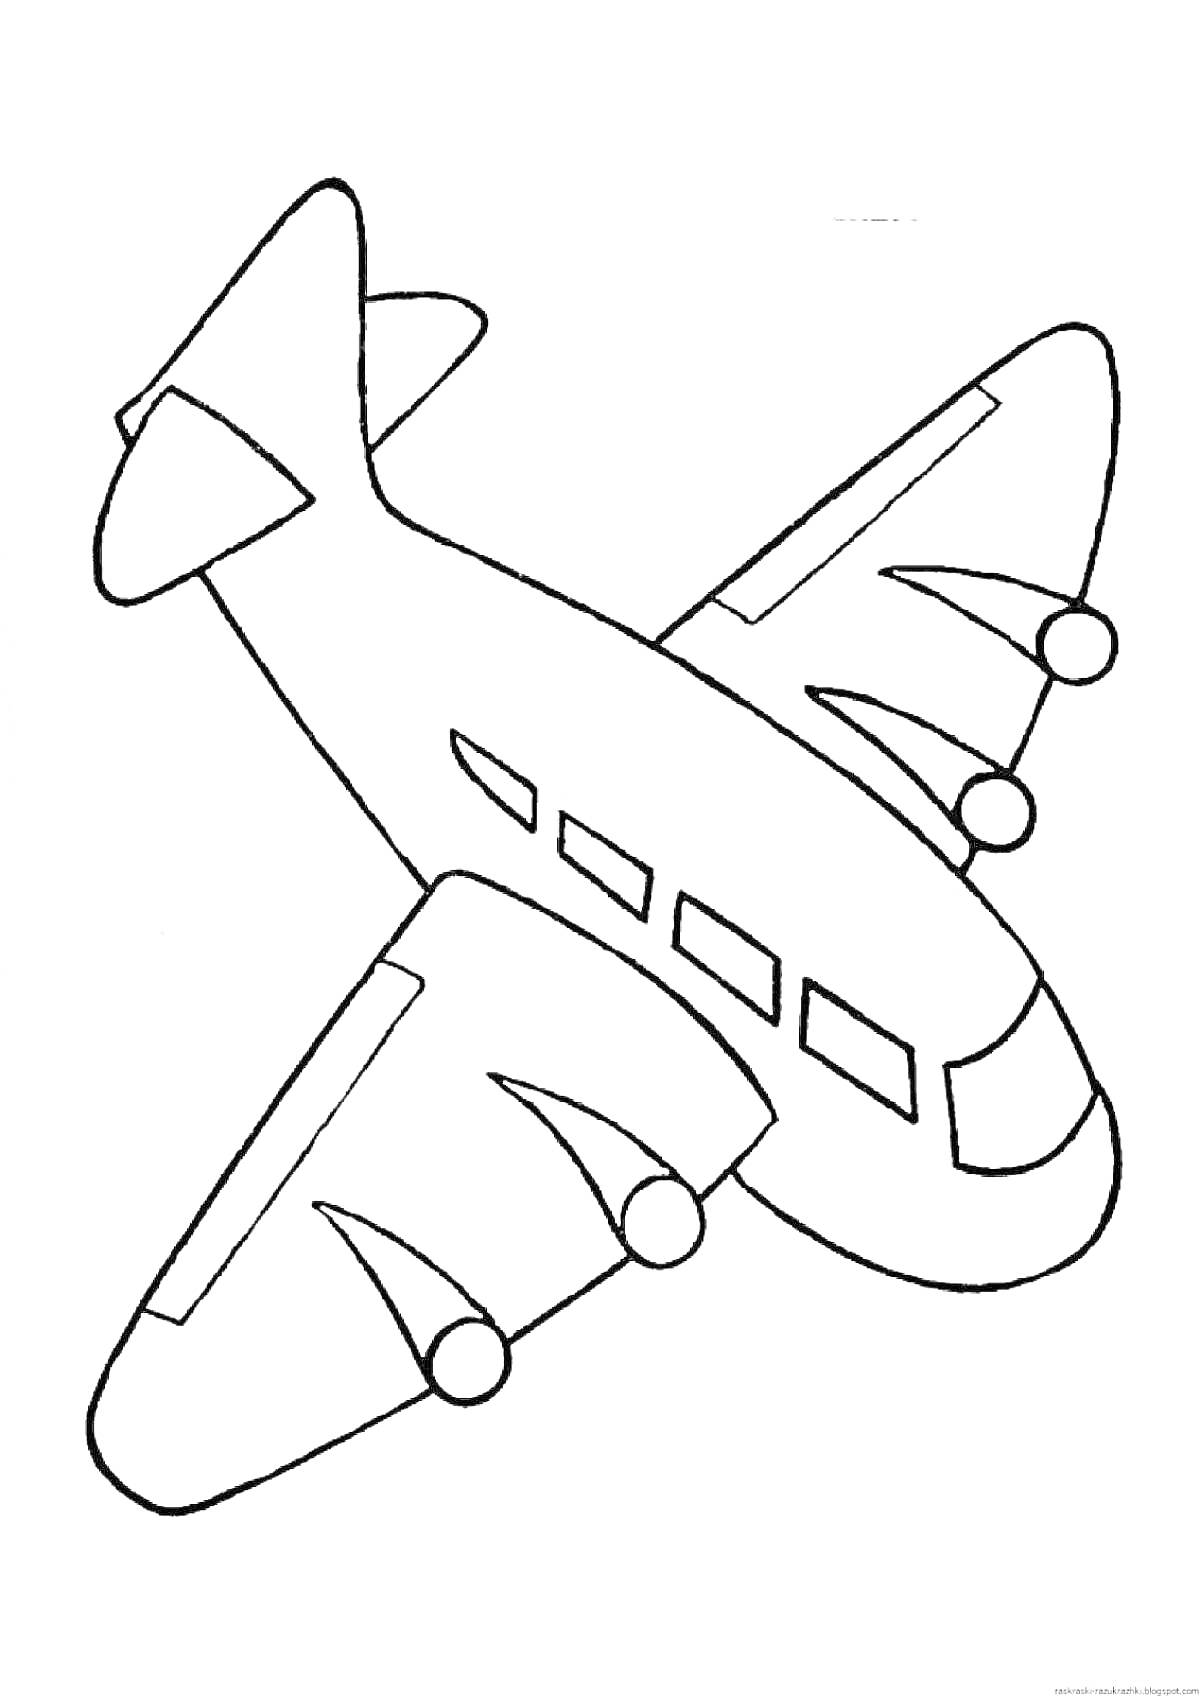 Раскраска Самолет с иллюминаторами и двигателями на крыльях